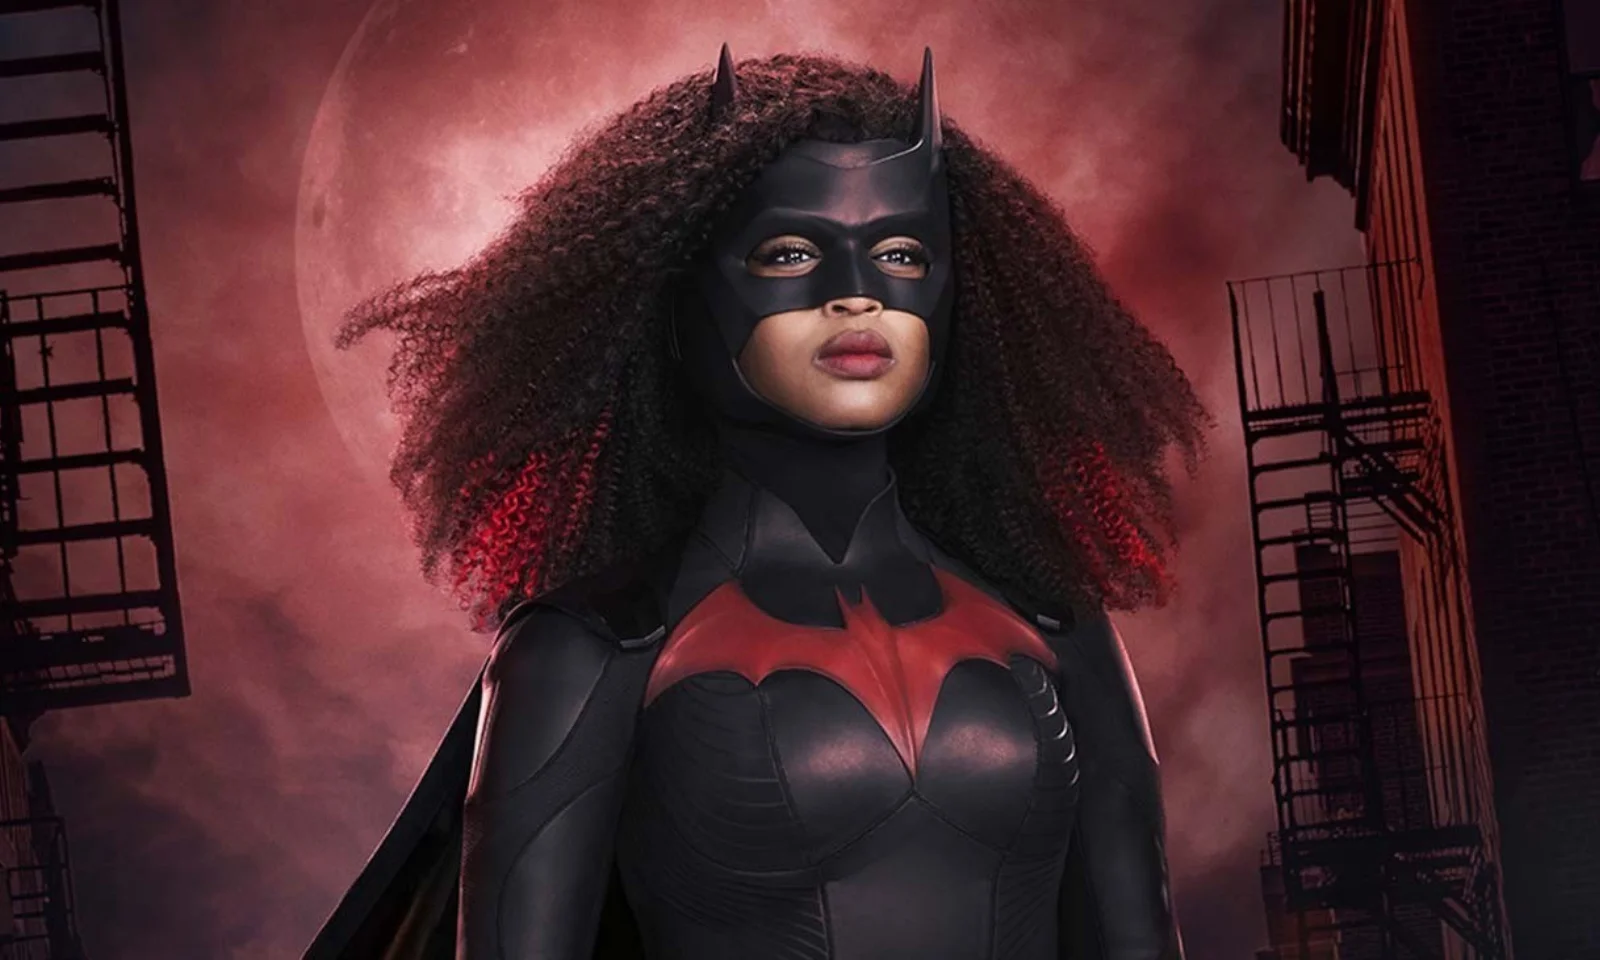 18 января на телеканале The CW и «Кинопоиске» вышла 1 серия 2 сезона «Бэтвумен» (Batwoman). После поспешного ухода актрисы Руби Роуз костюм на себя примерила Джависия Лесли. Ее героиня Райан значительно отличается от кузины Брюса Уэйна. Объясняем, почему принципиально новый персонаж страдает от старых проблем «Бэтвумен».